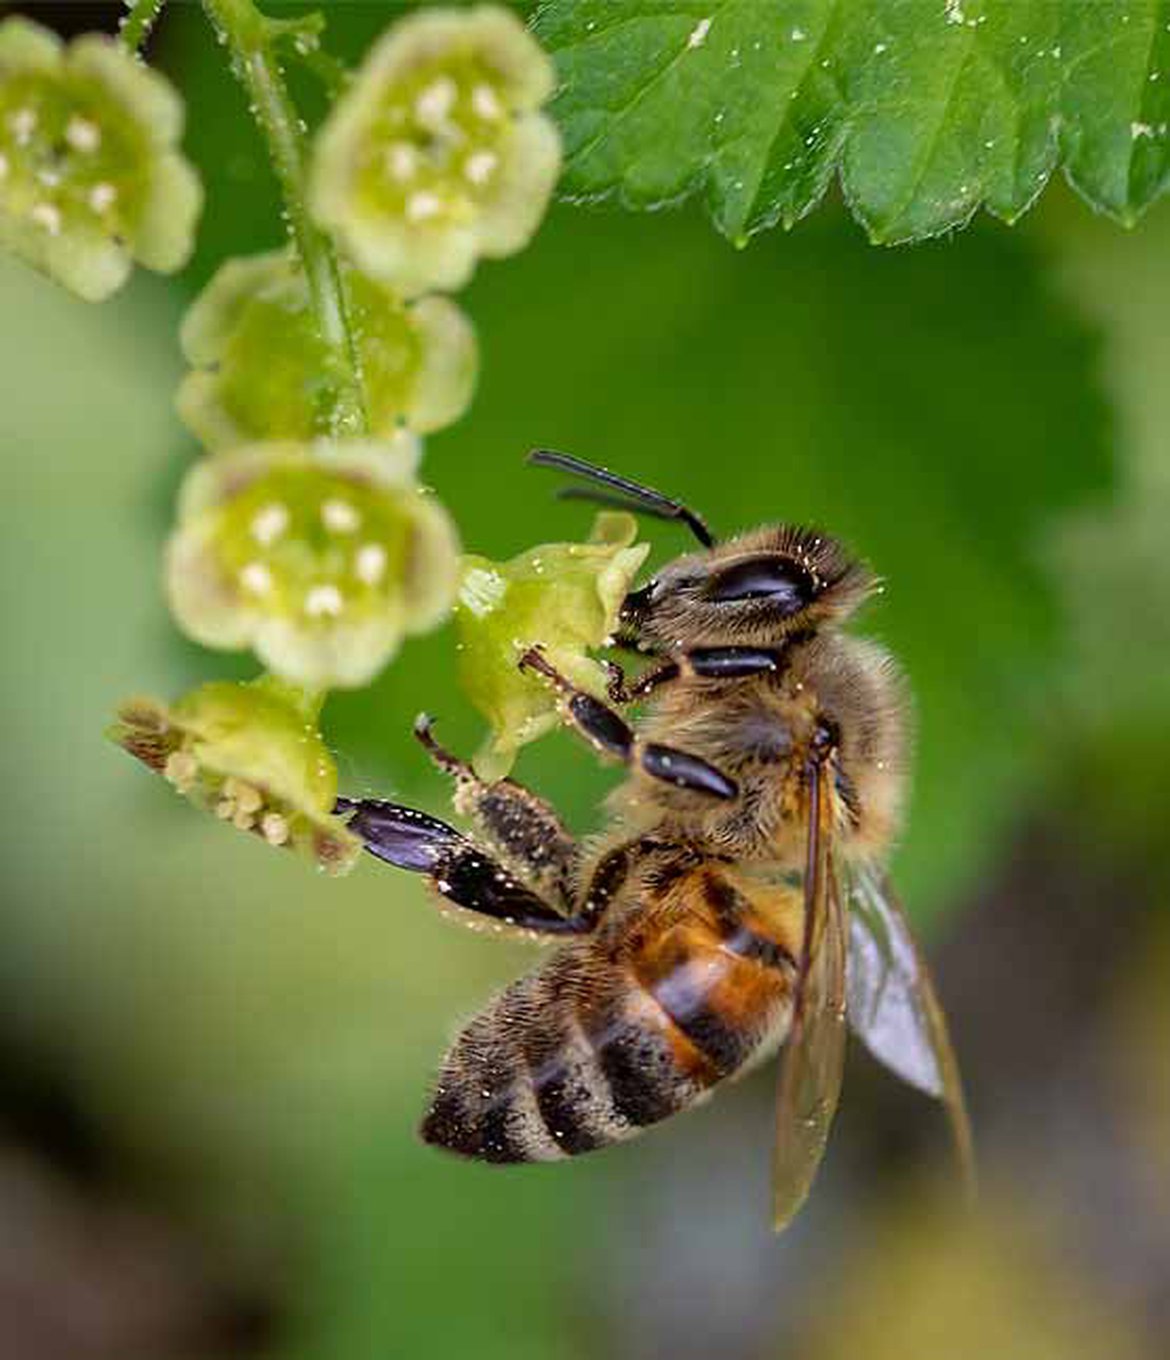 Entretien sur les abeilles et l'apiculture